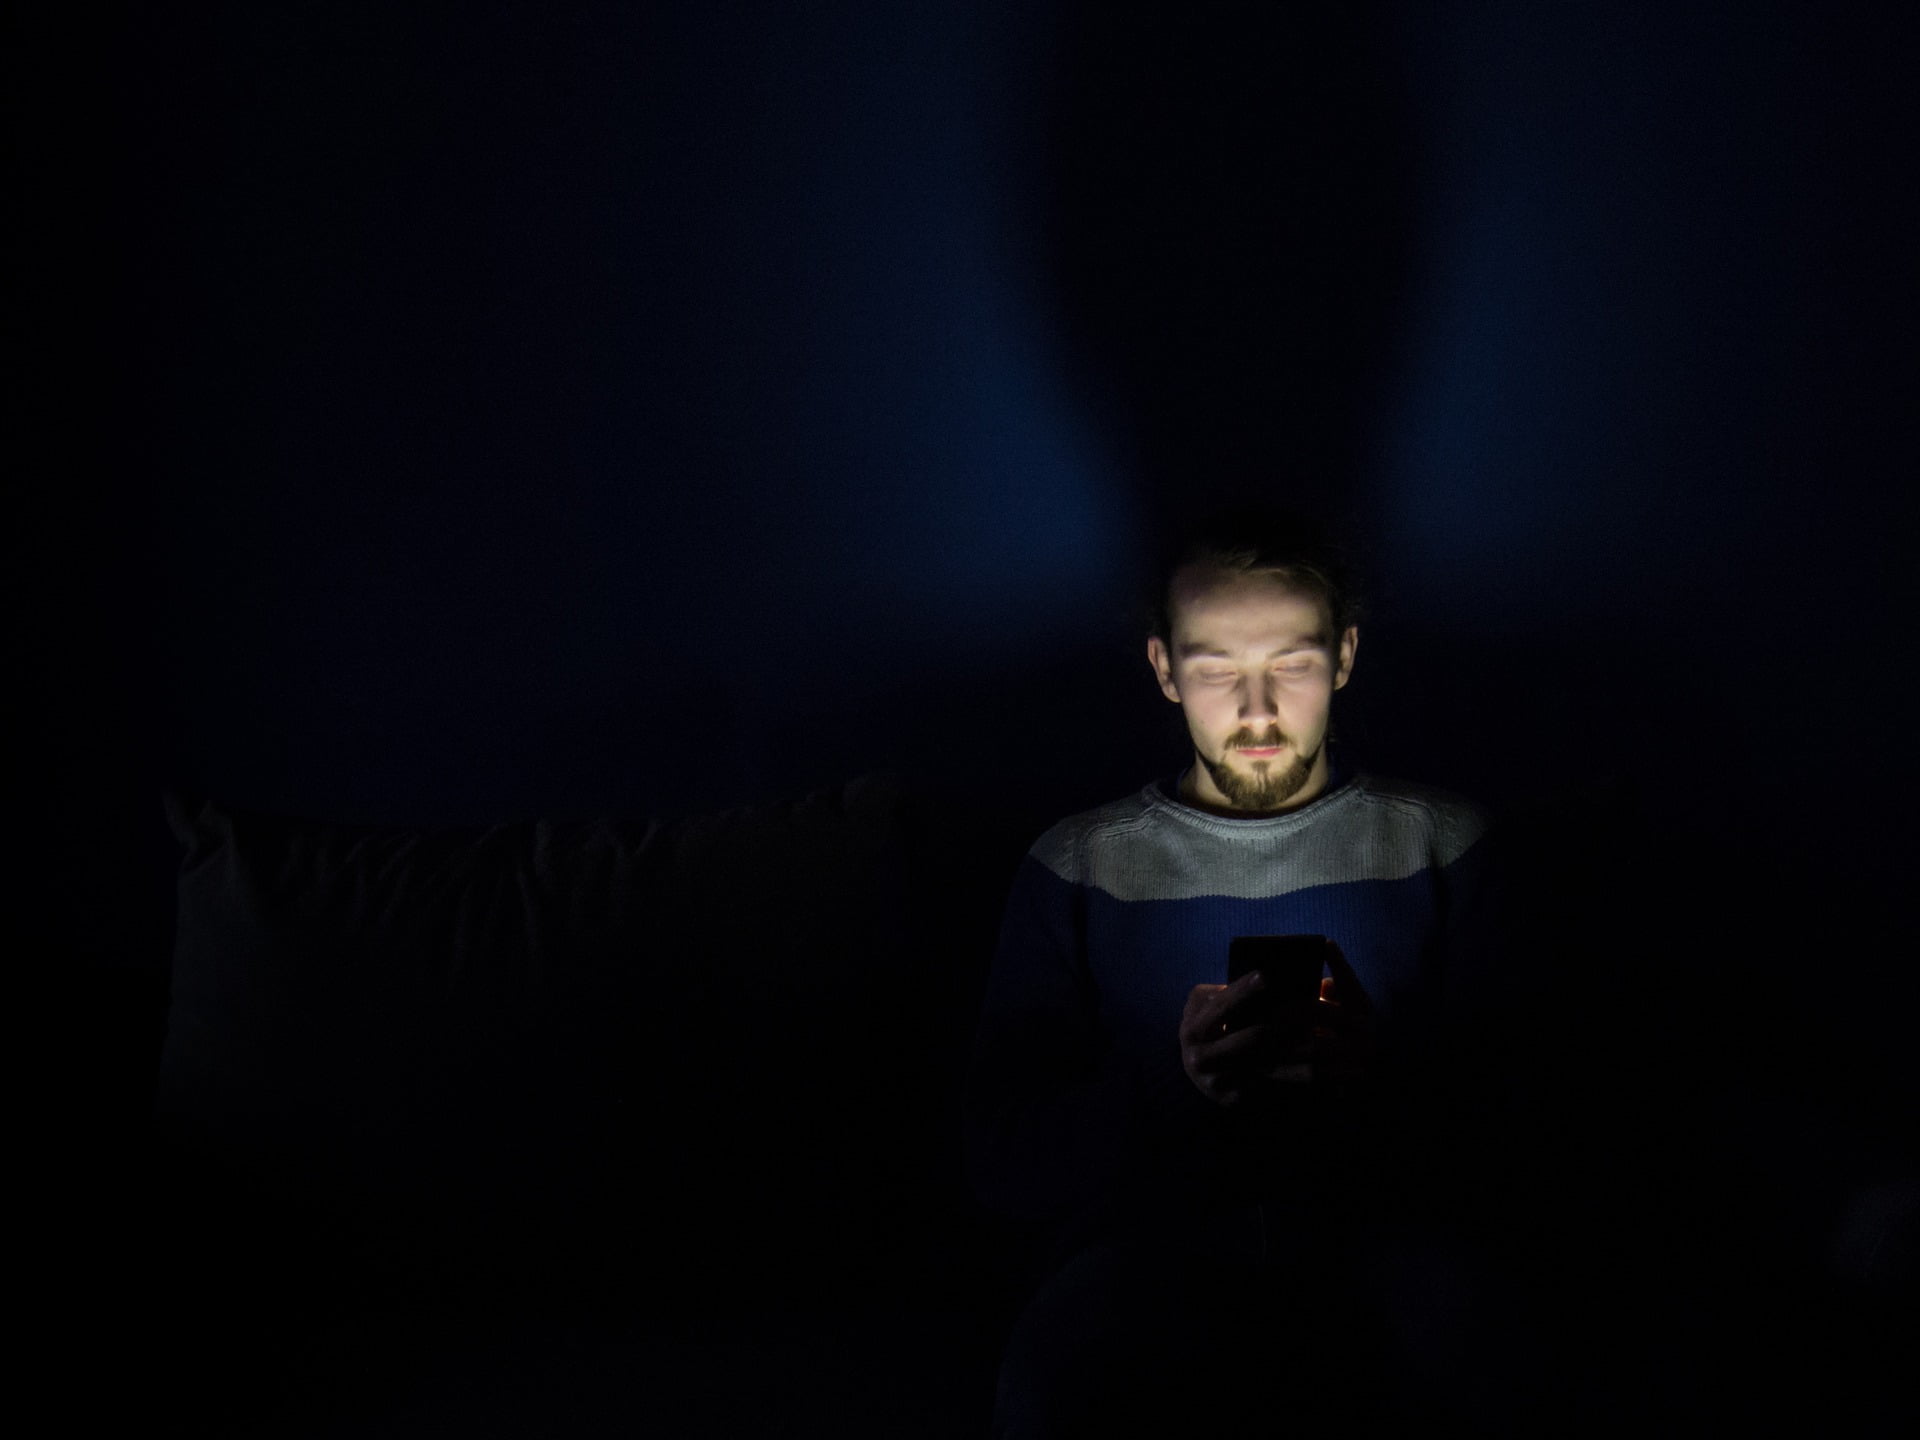 Luz azul, presente em celular, tablet, televisão, computador e outros dispositivos. Foto: Pixabay 